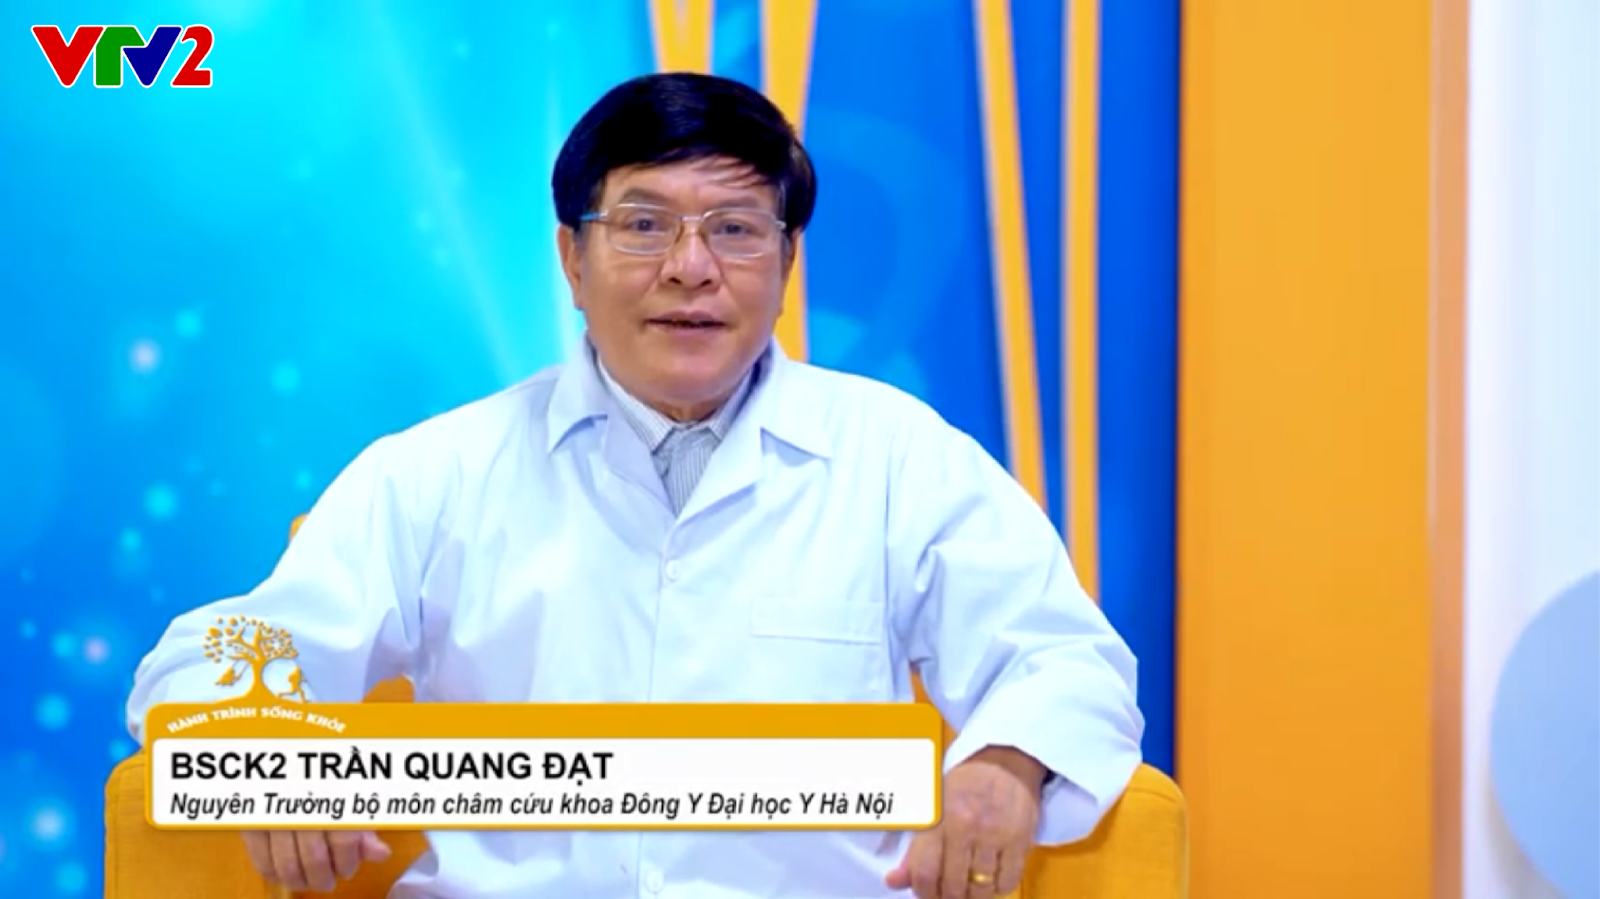 Bác sĩ Trần Quang Đạt đánh giá cao hiệu quả của thành phần GO-LESS